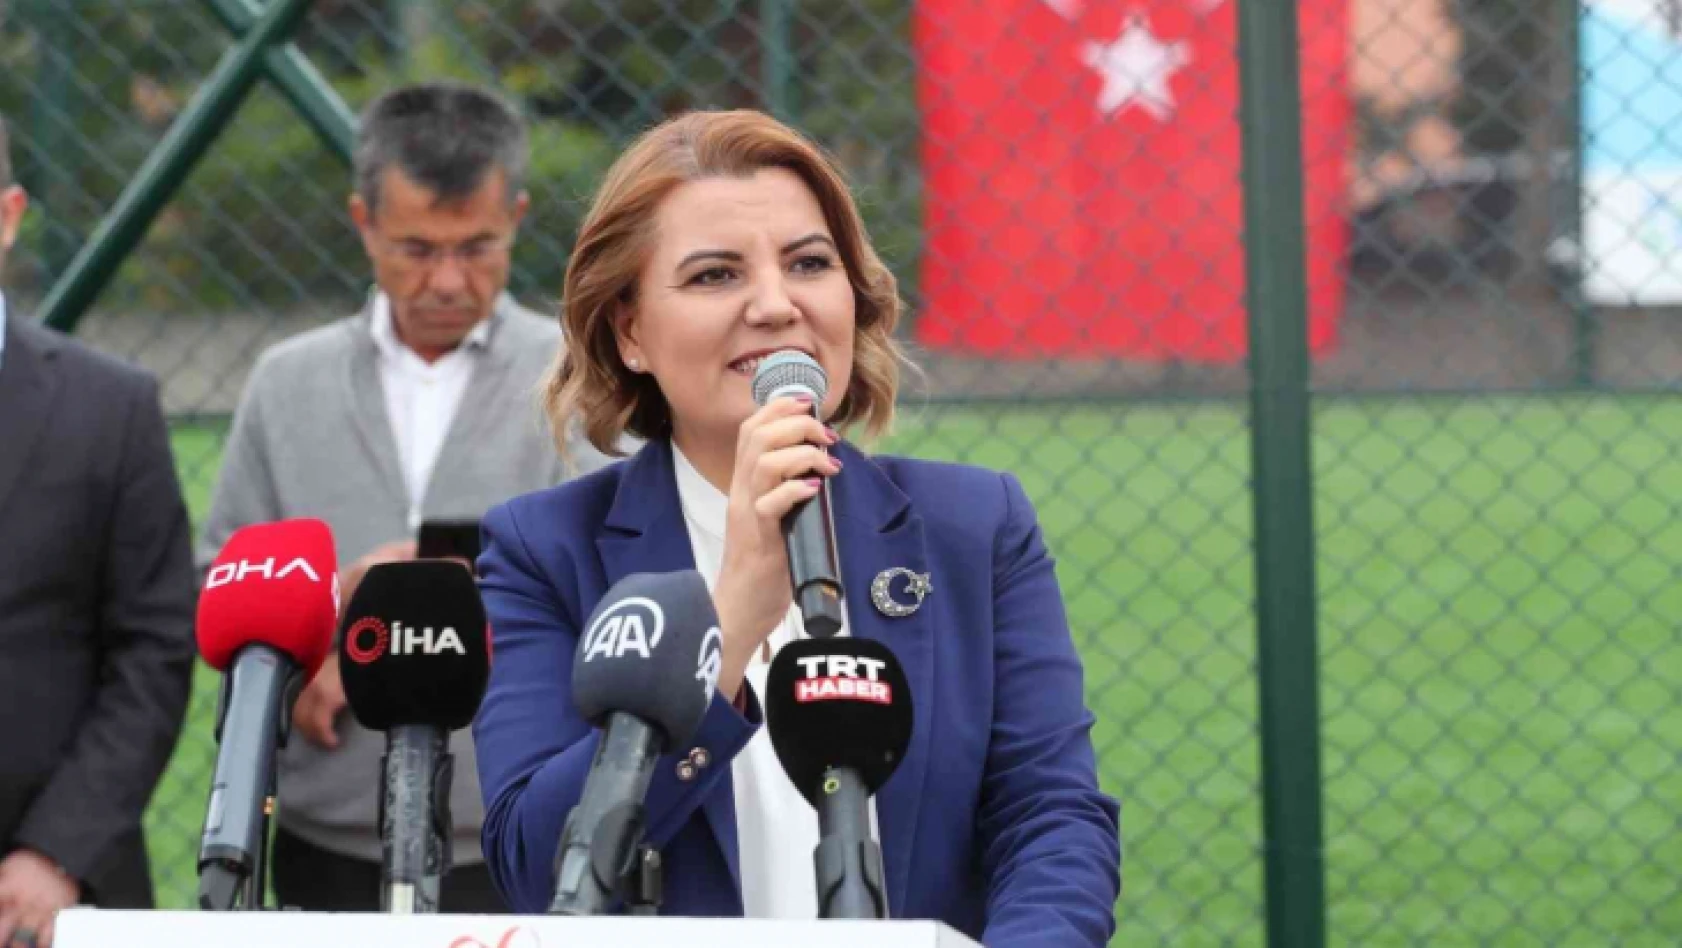 Meral Akşener, İzmit'te abisi Nihat Gürer adına yapılan spor tesisinin açılışına katıldı